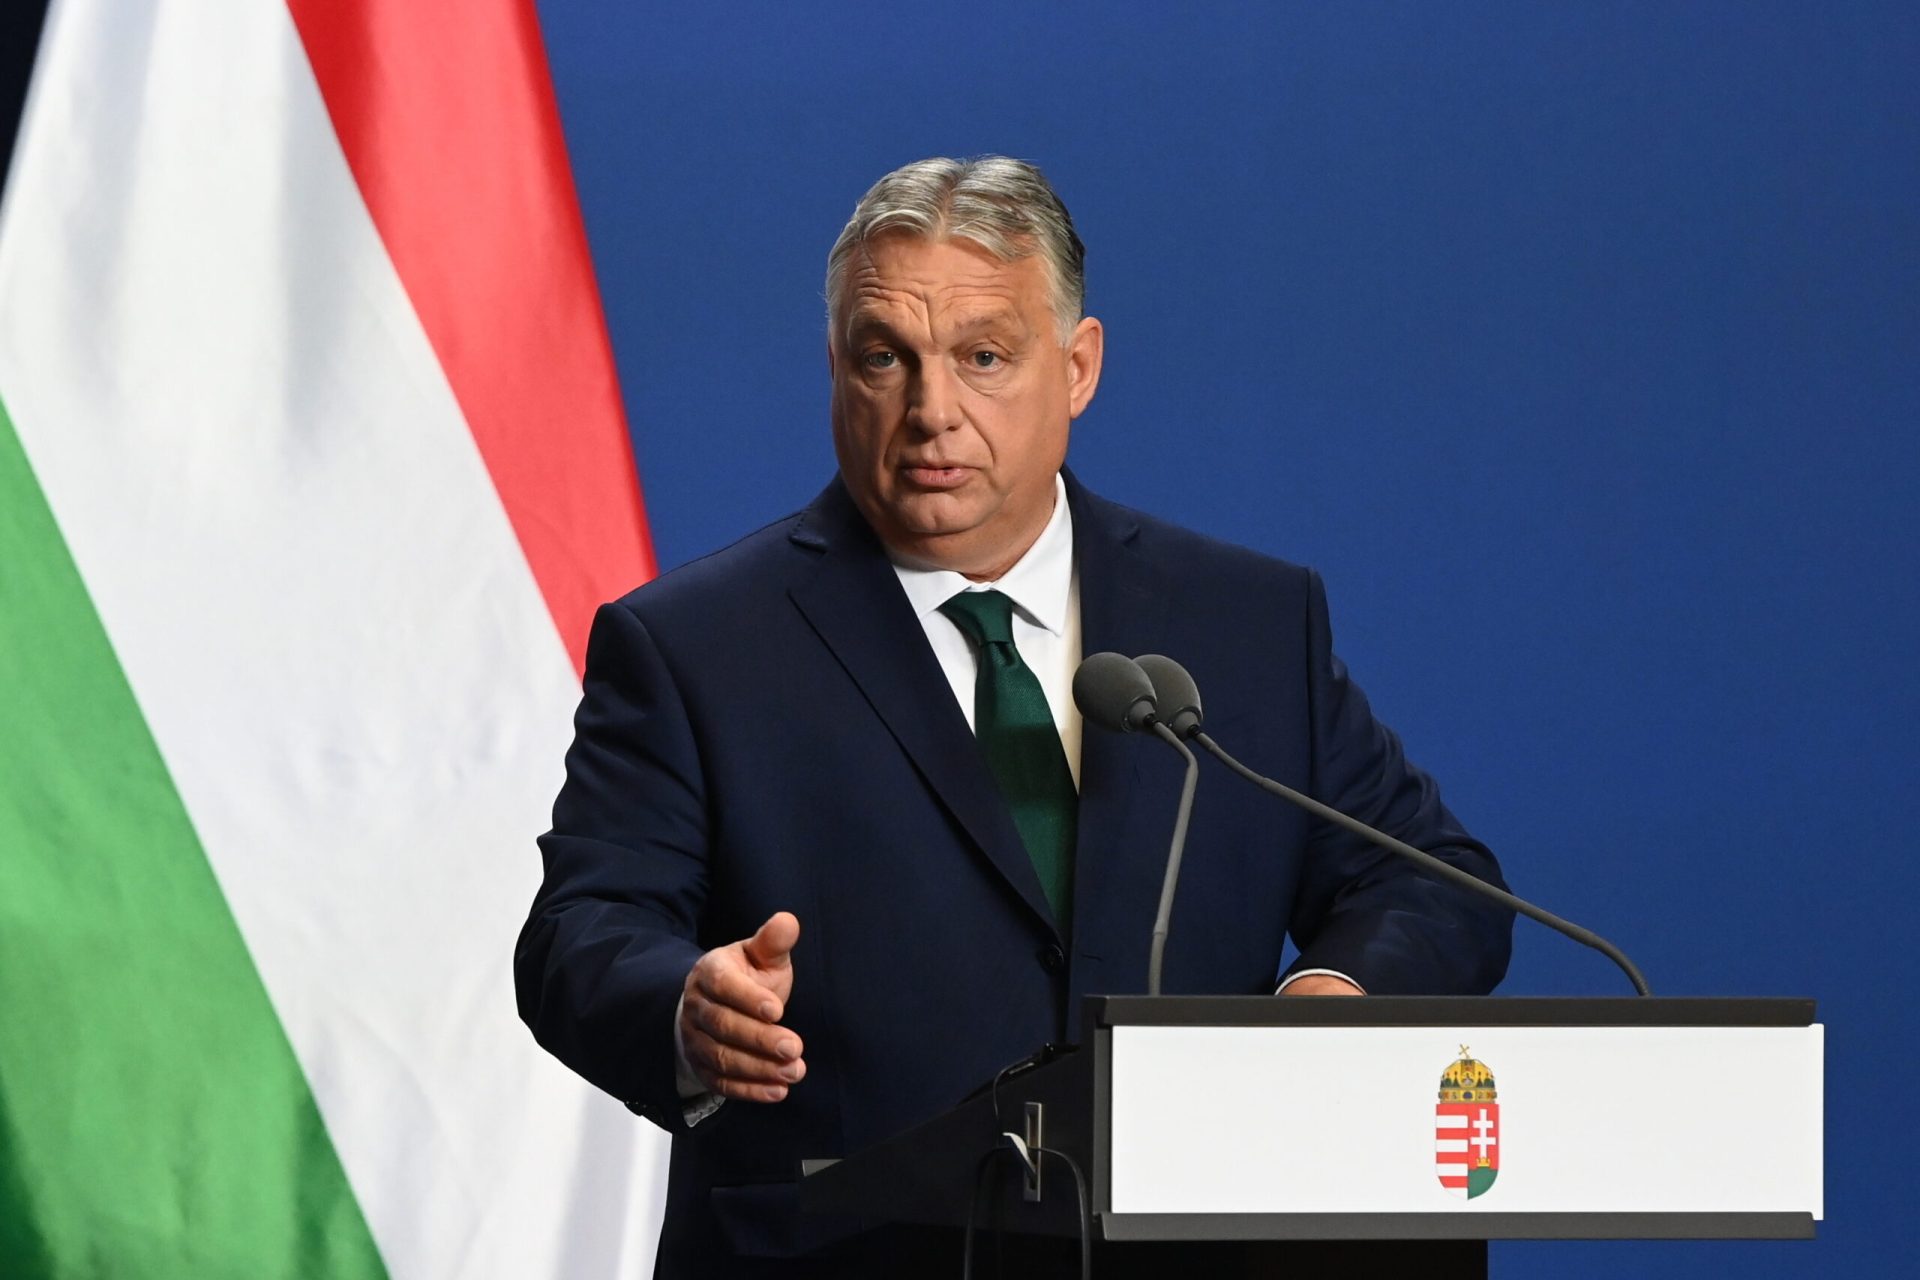 Az eseményekre Orbán Viktor határozott reakciója: a konvoj kísérőjének halálos balesetére